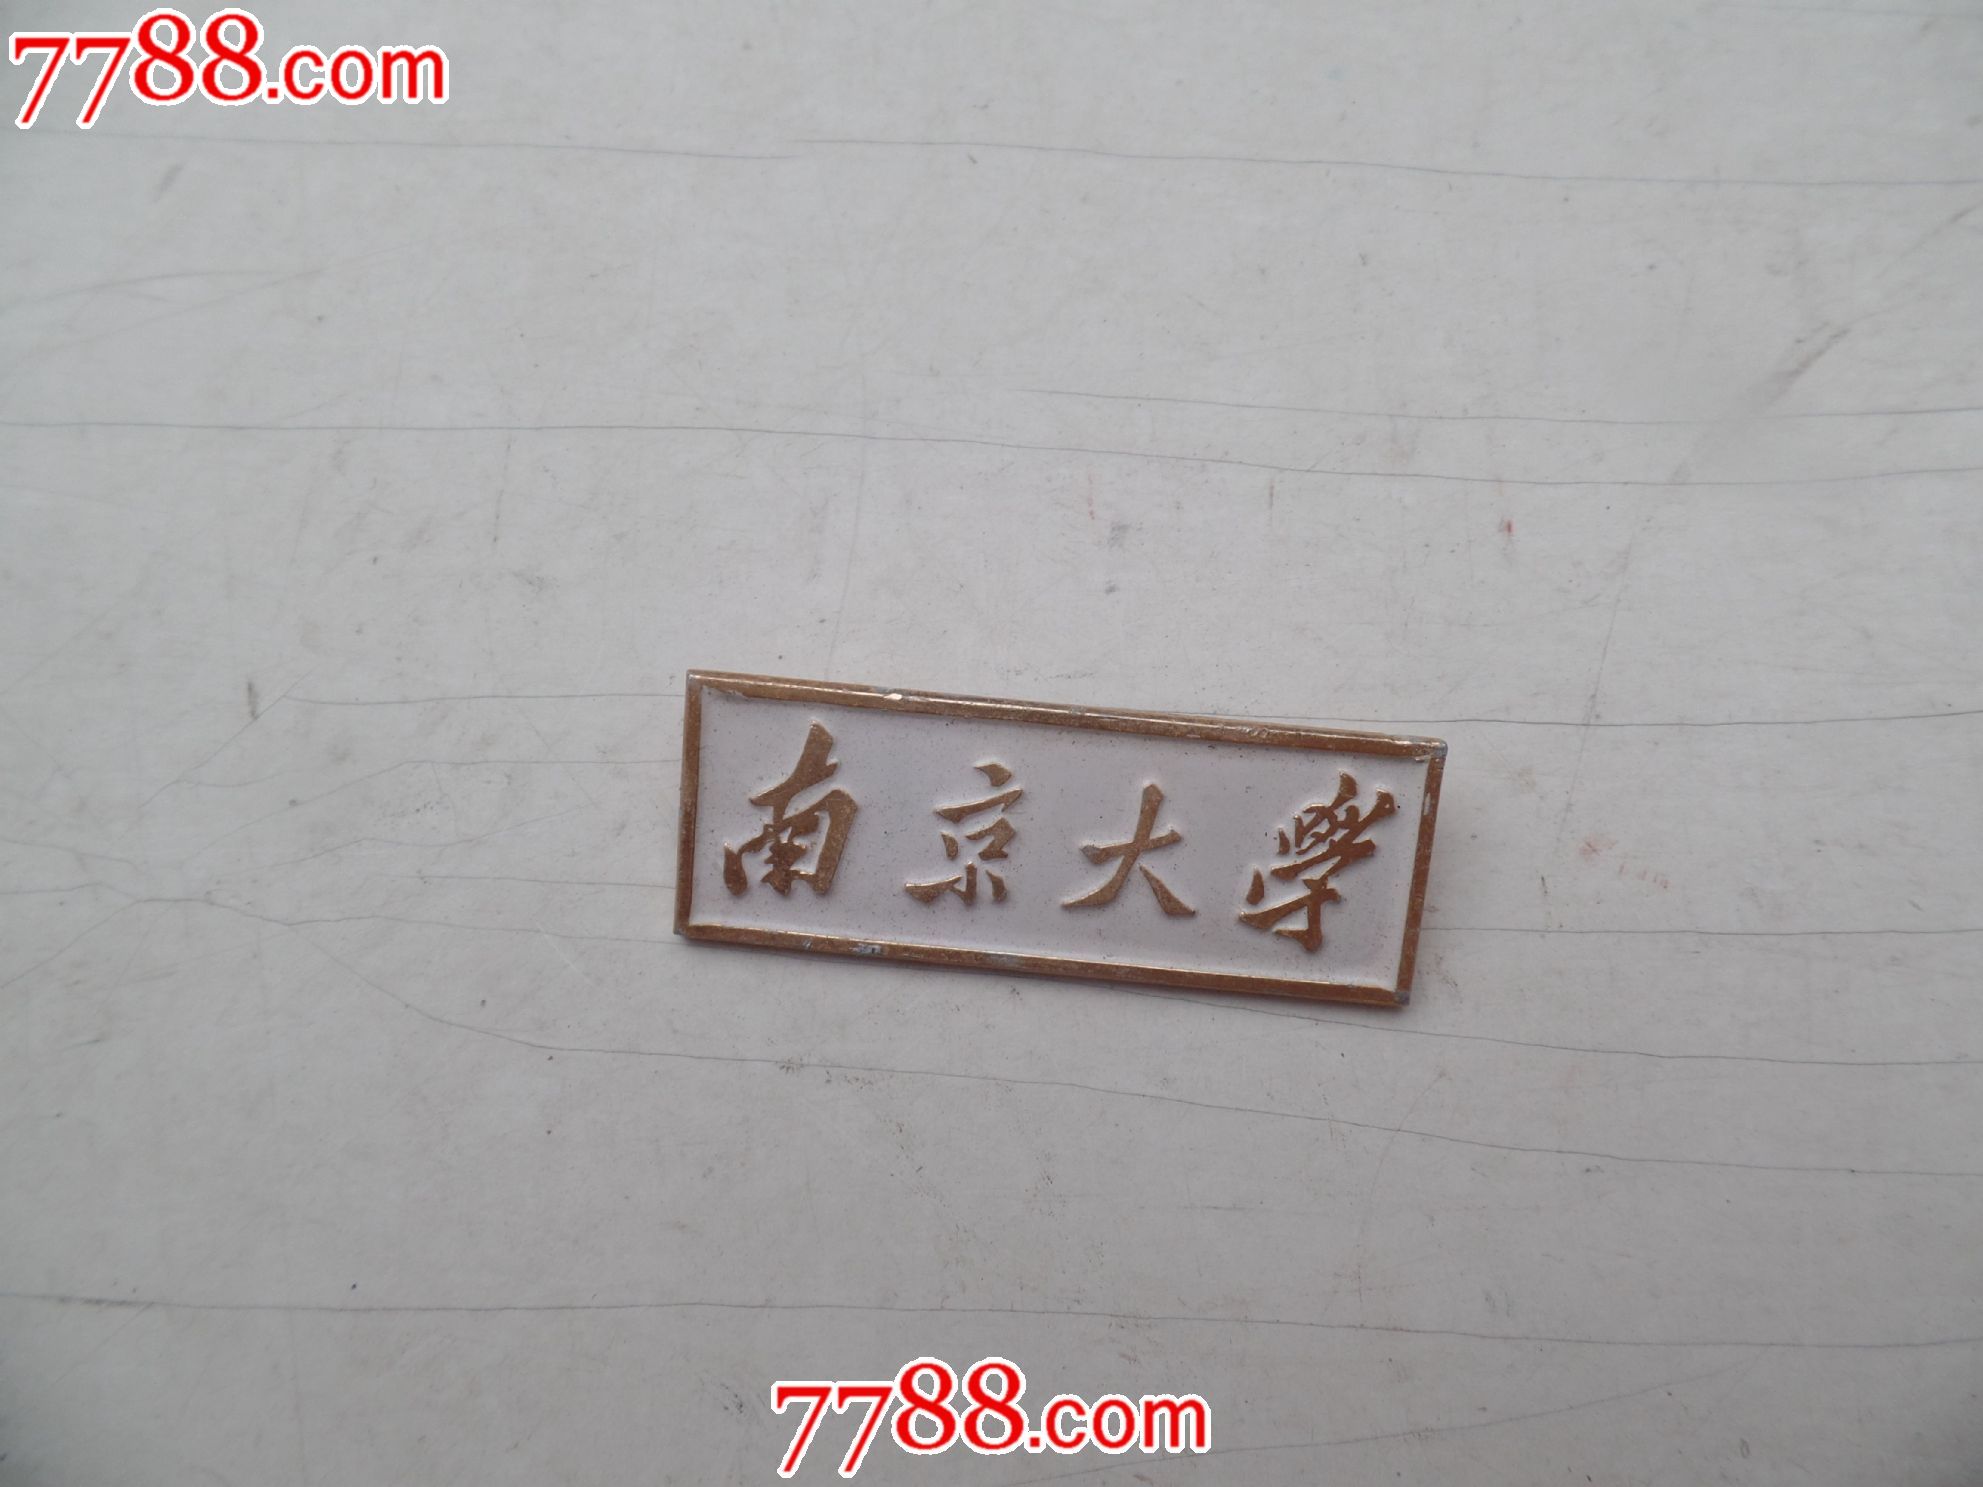 南京大学校徽白底包真尺寸:4.3x1.6厘米.编号:学生00第